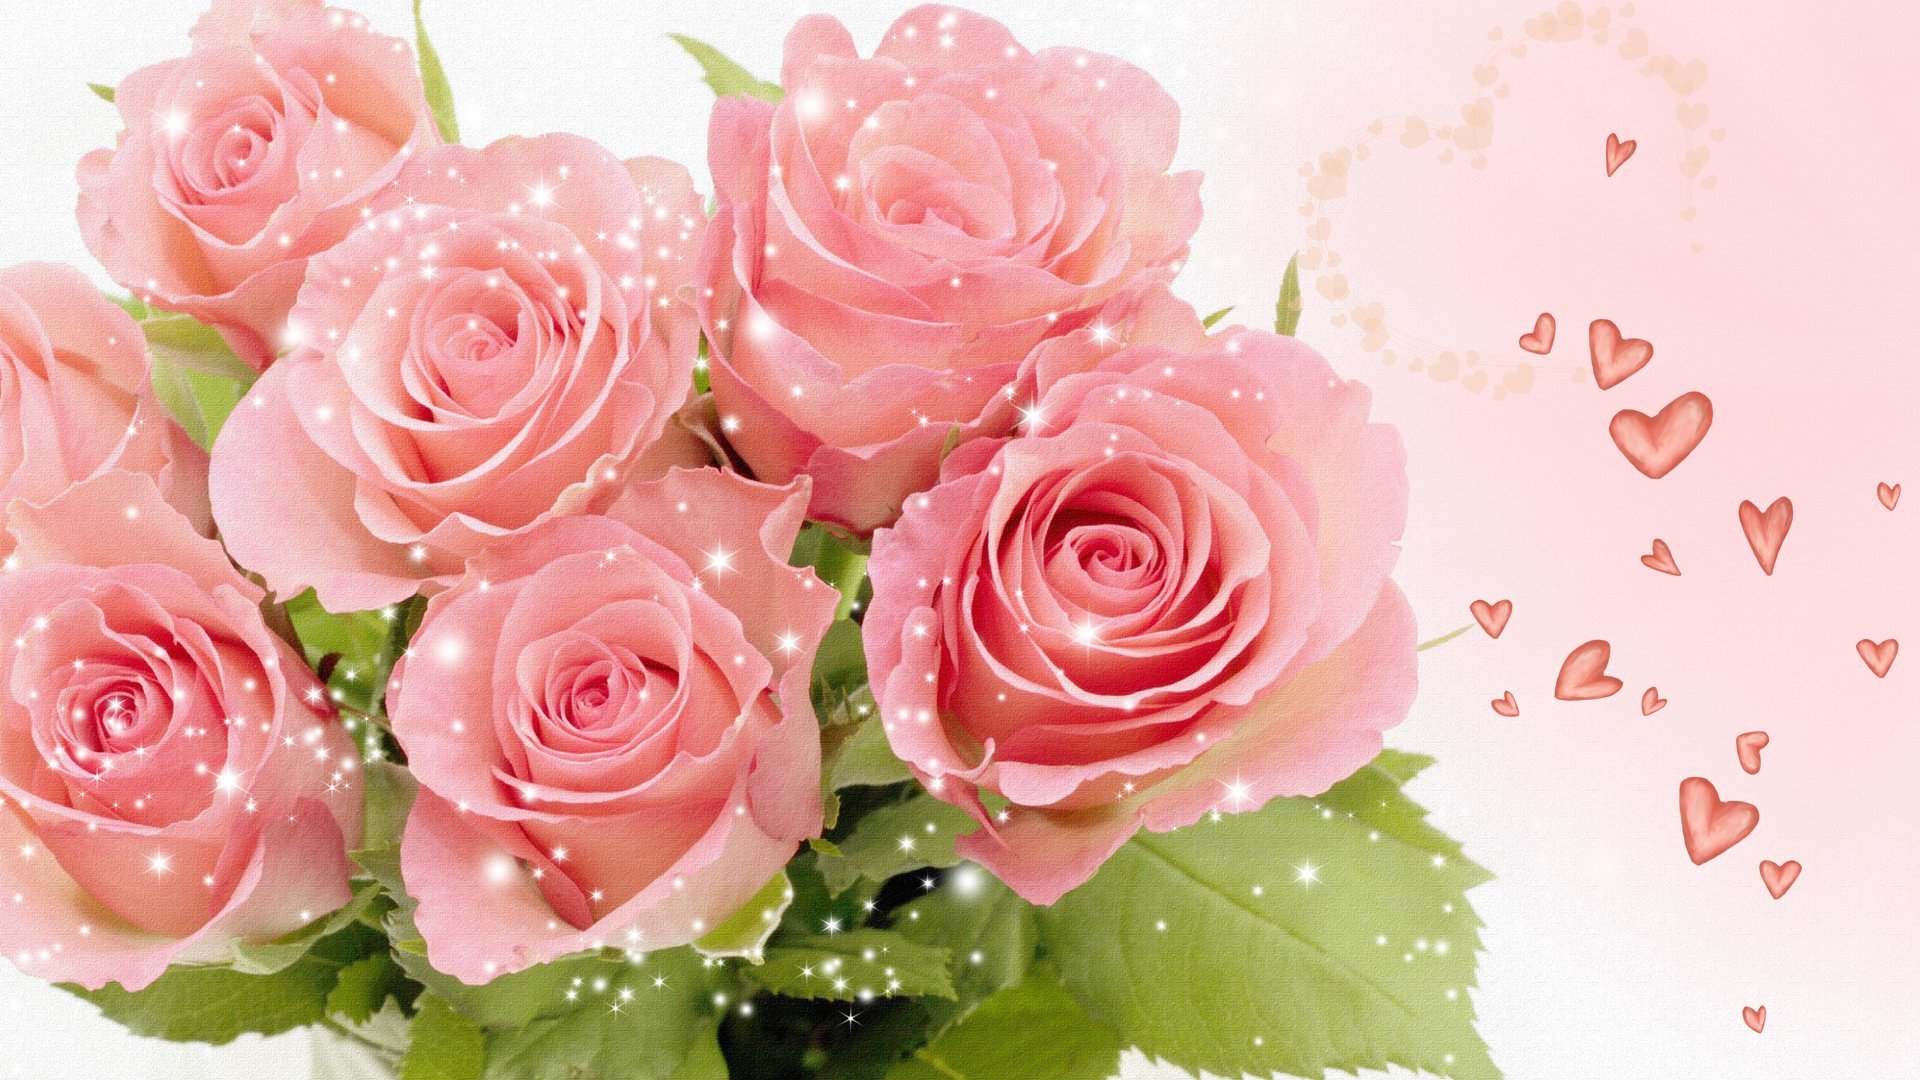 Розы фото красивые с днем рождения поздравления женщине